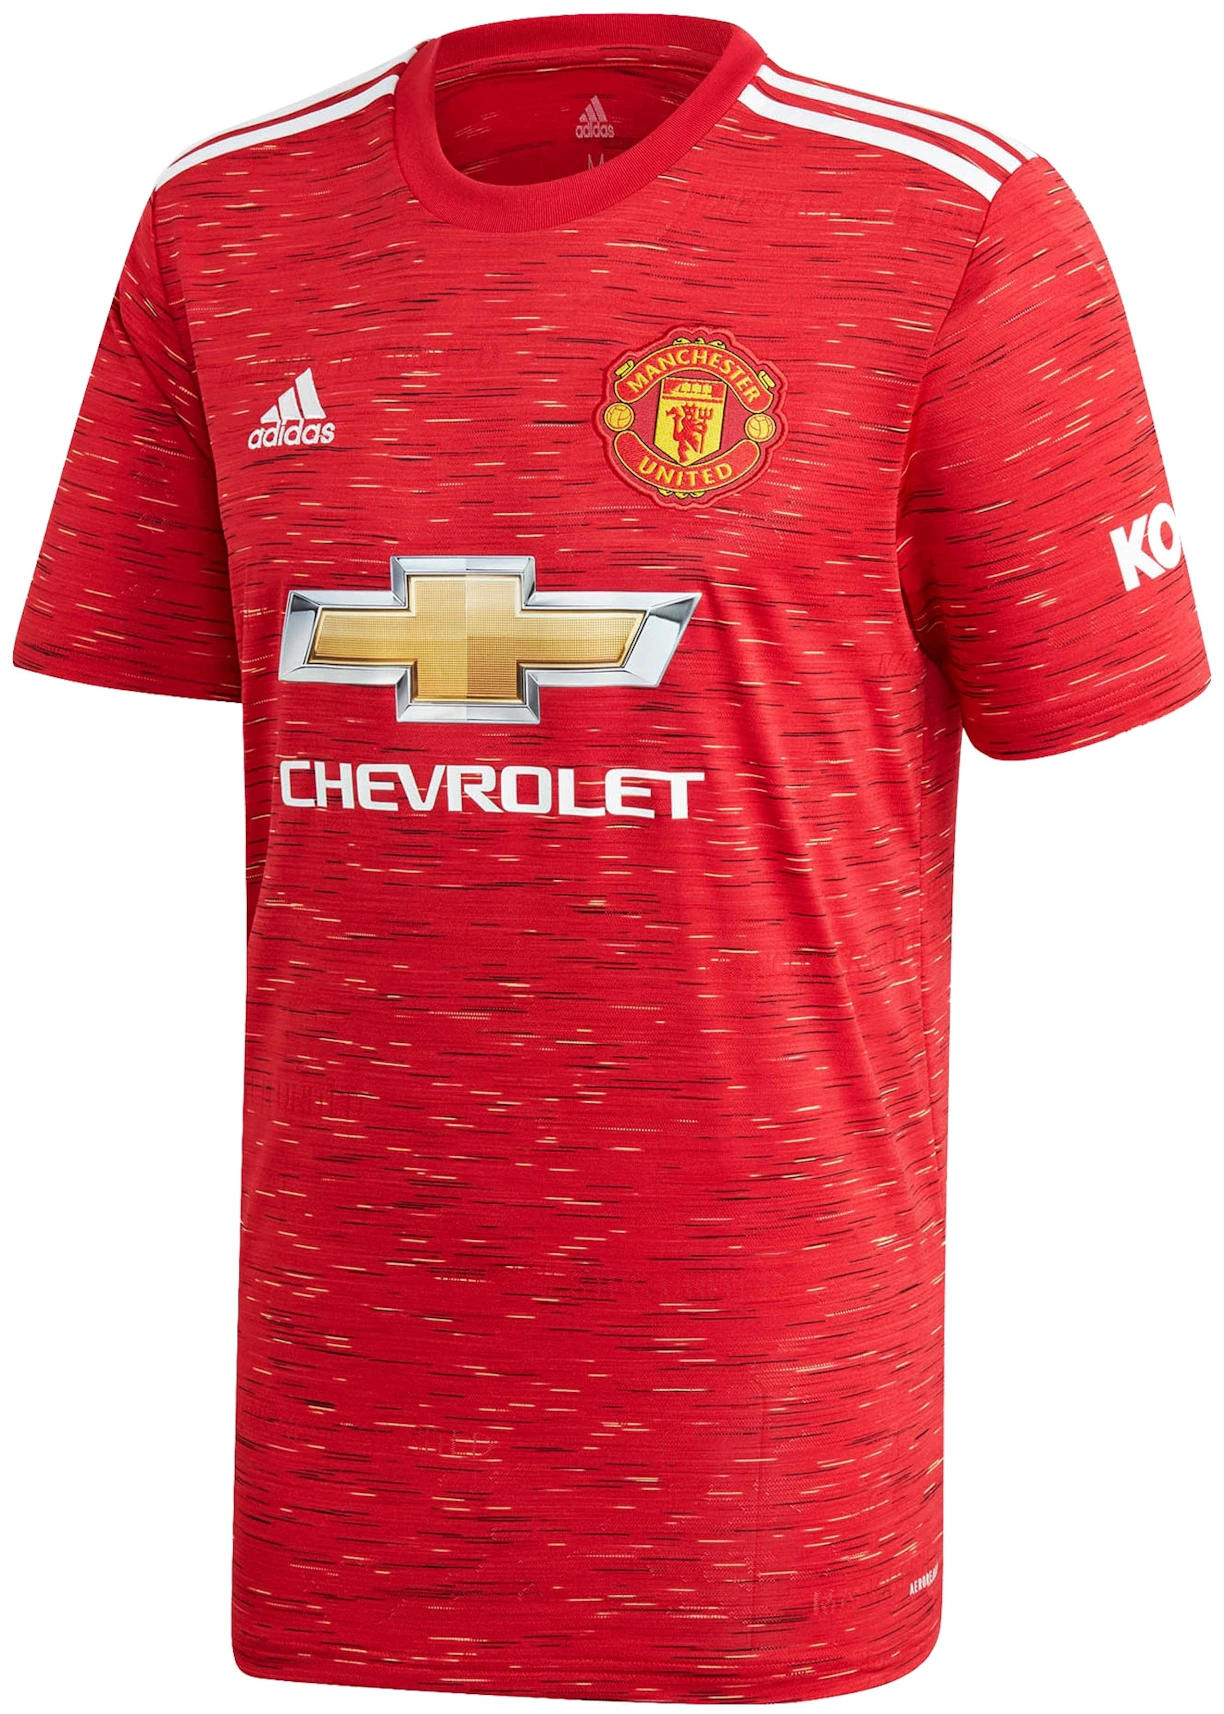 Tot stand brengen bedriegen datum adidas Manchester United Home Shirt 2020-21 Jersey Red - US